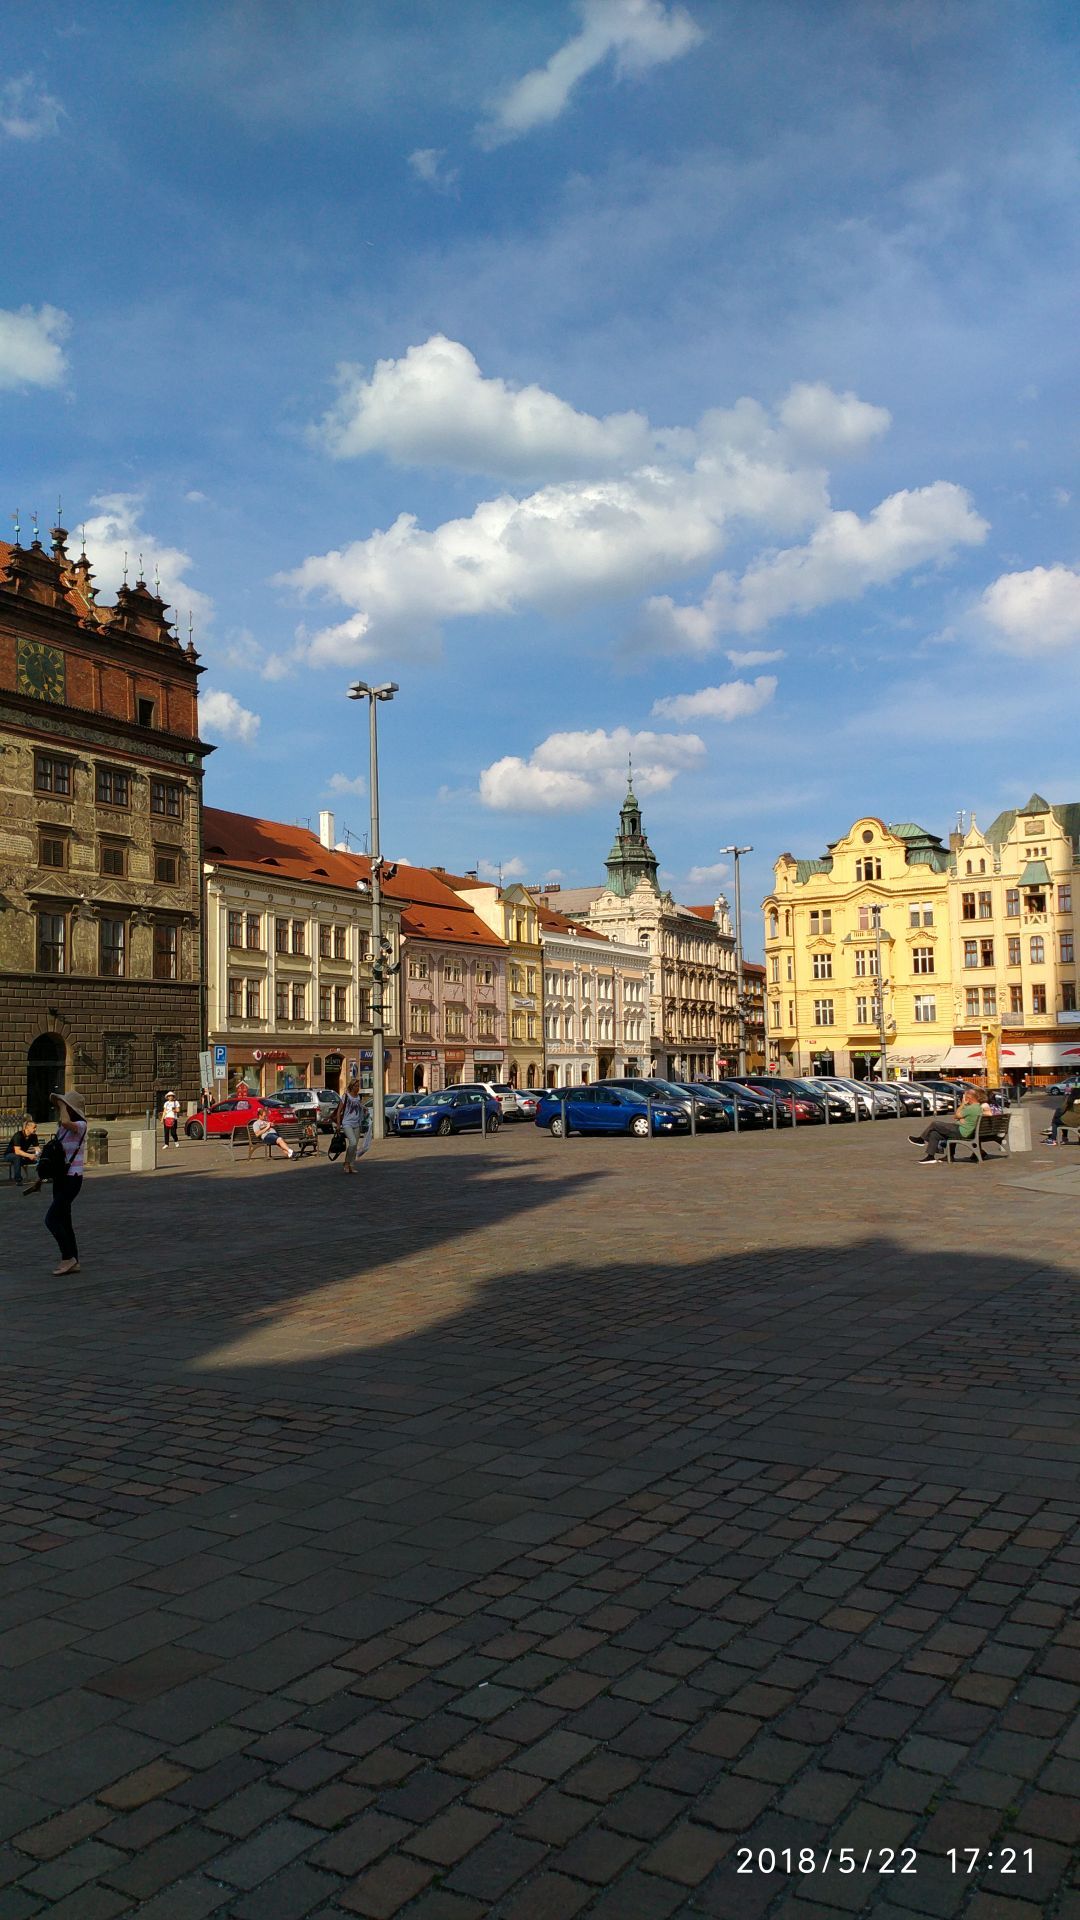 东欧六国游 捷克 皮尔森(市区)续 皮尔森是捷克西部的经济、文化和运输中心，西捷克州首府。它位于肥沃